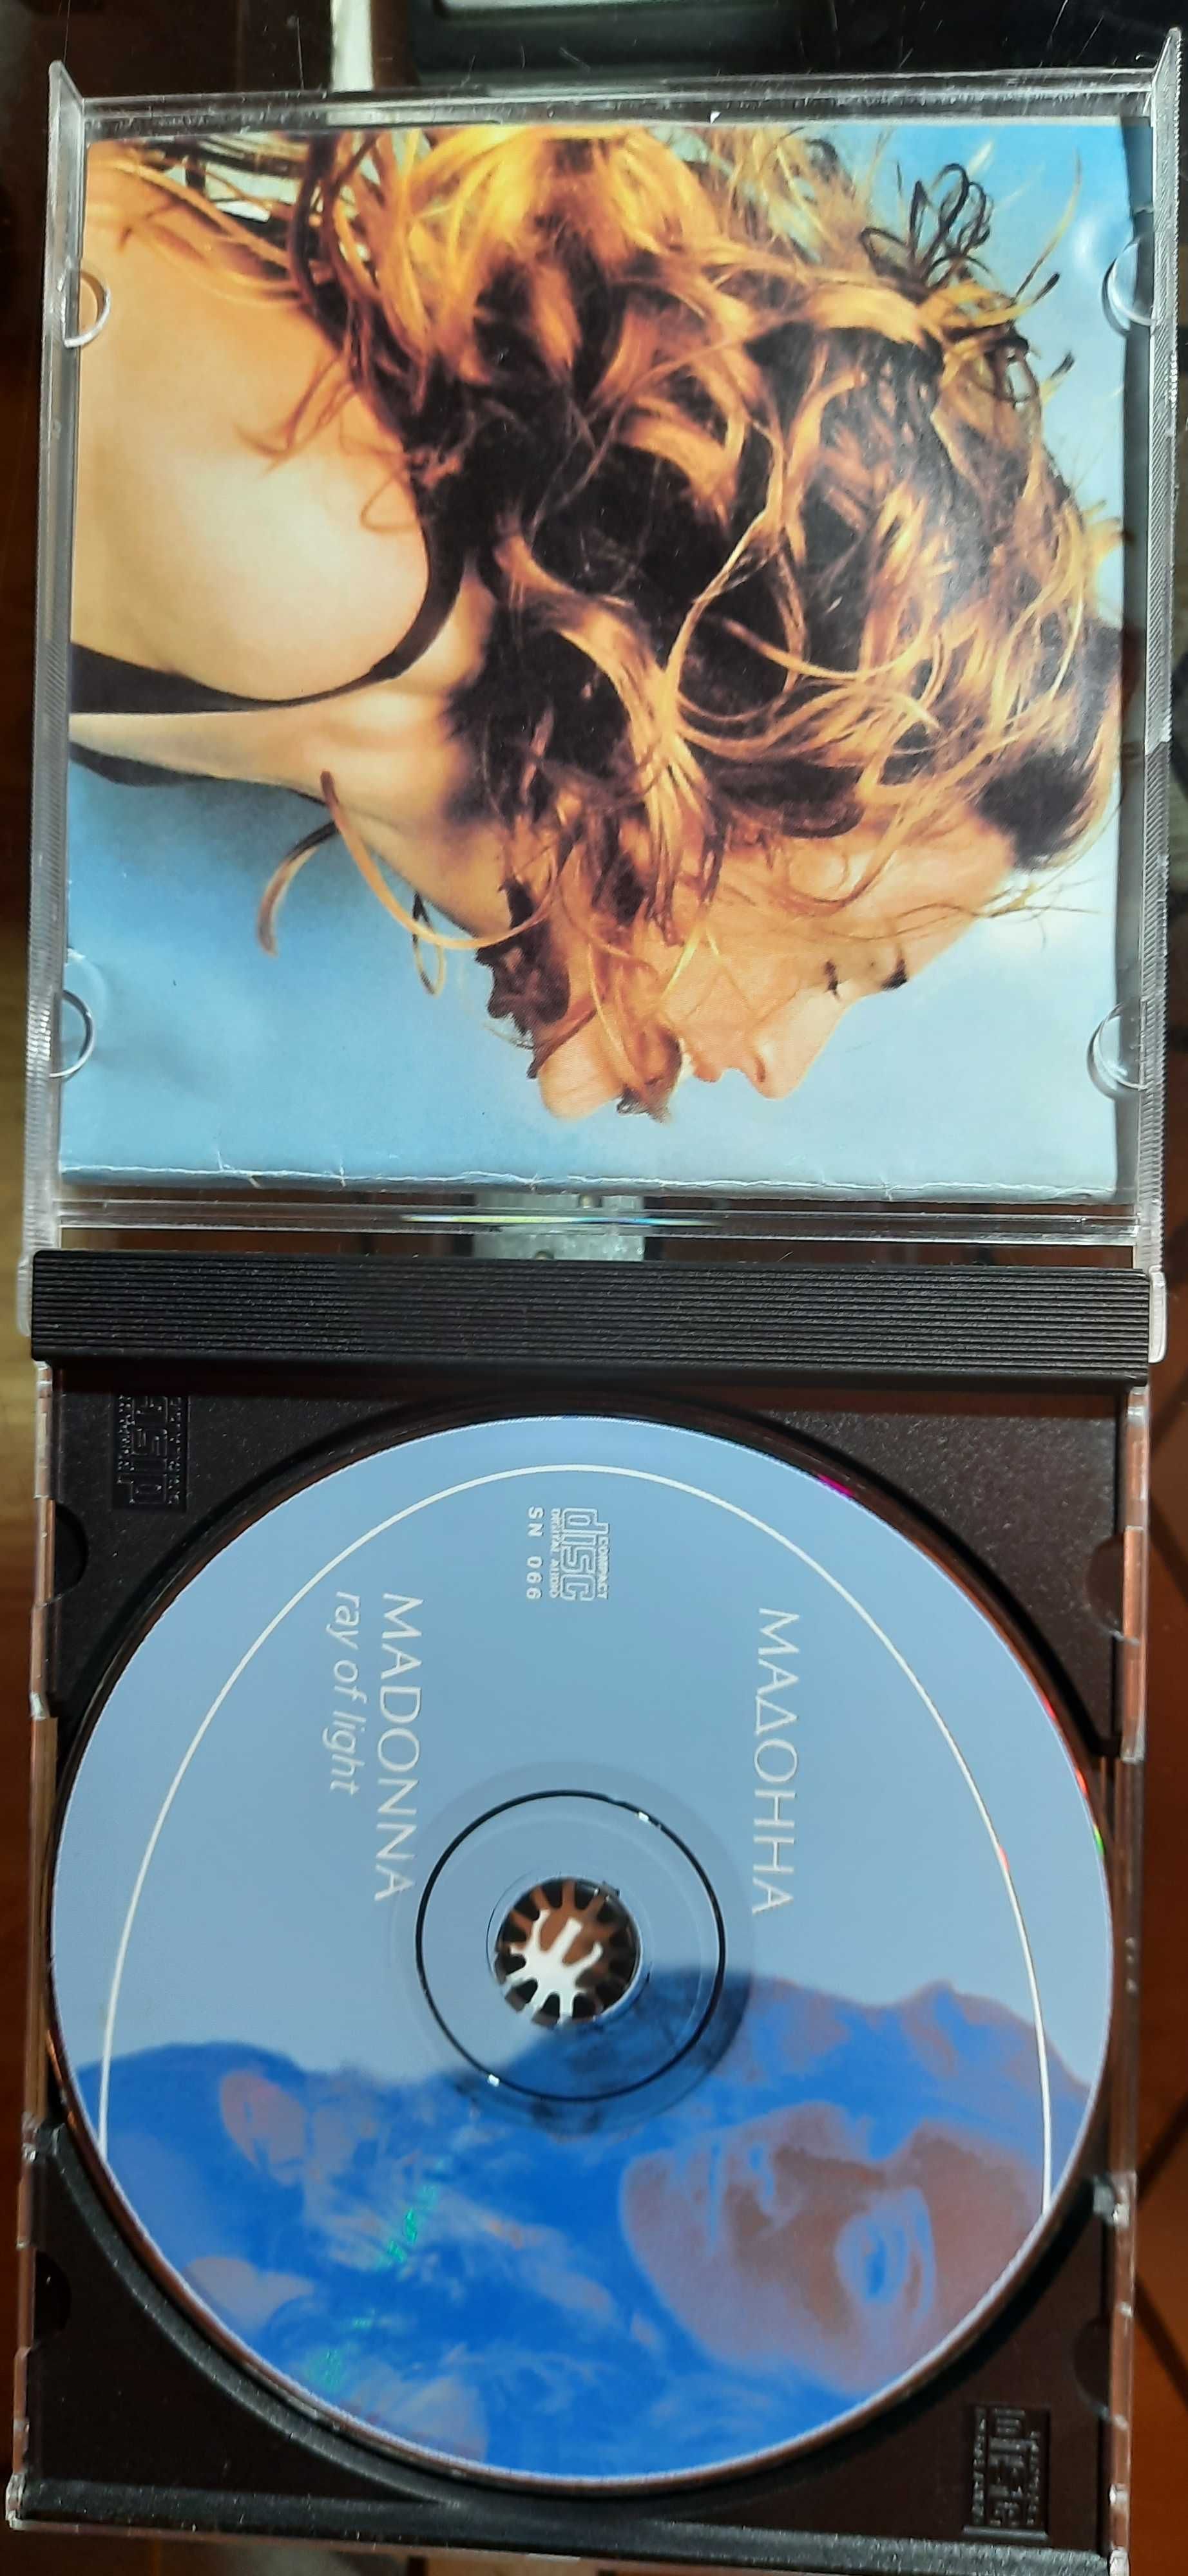 CD-диски из личной коллекции.